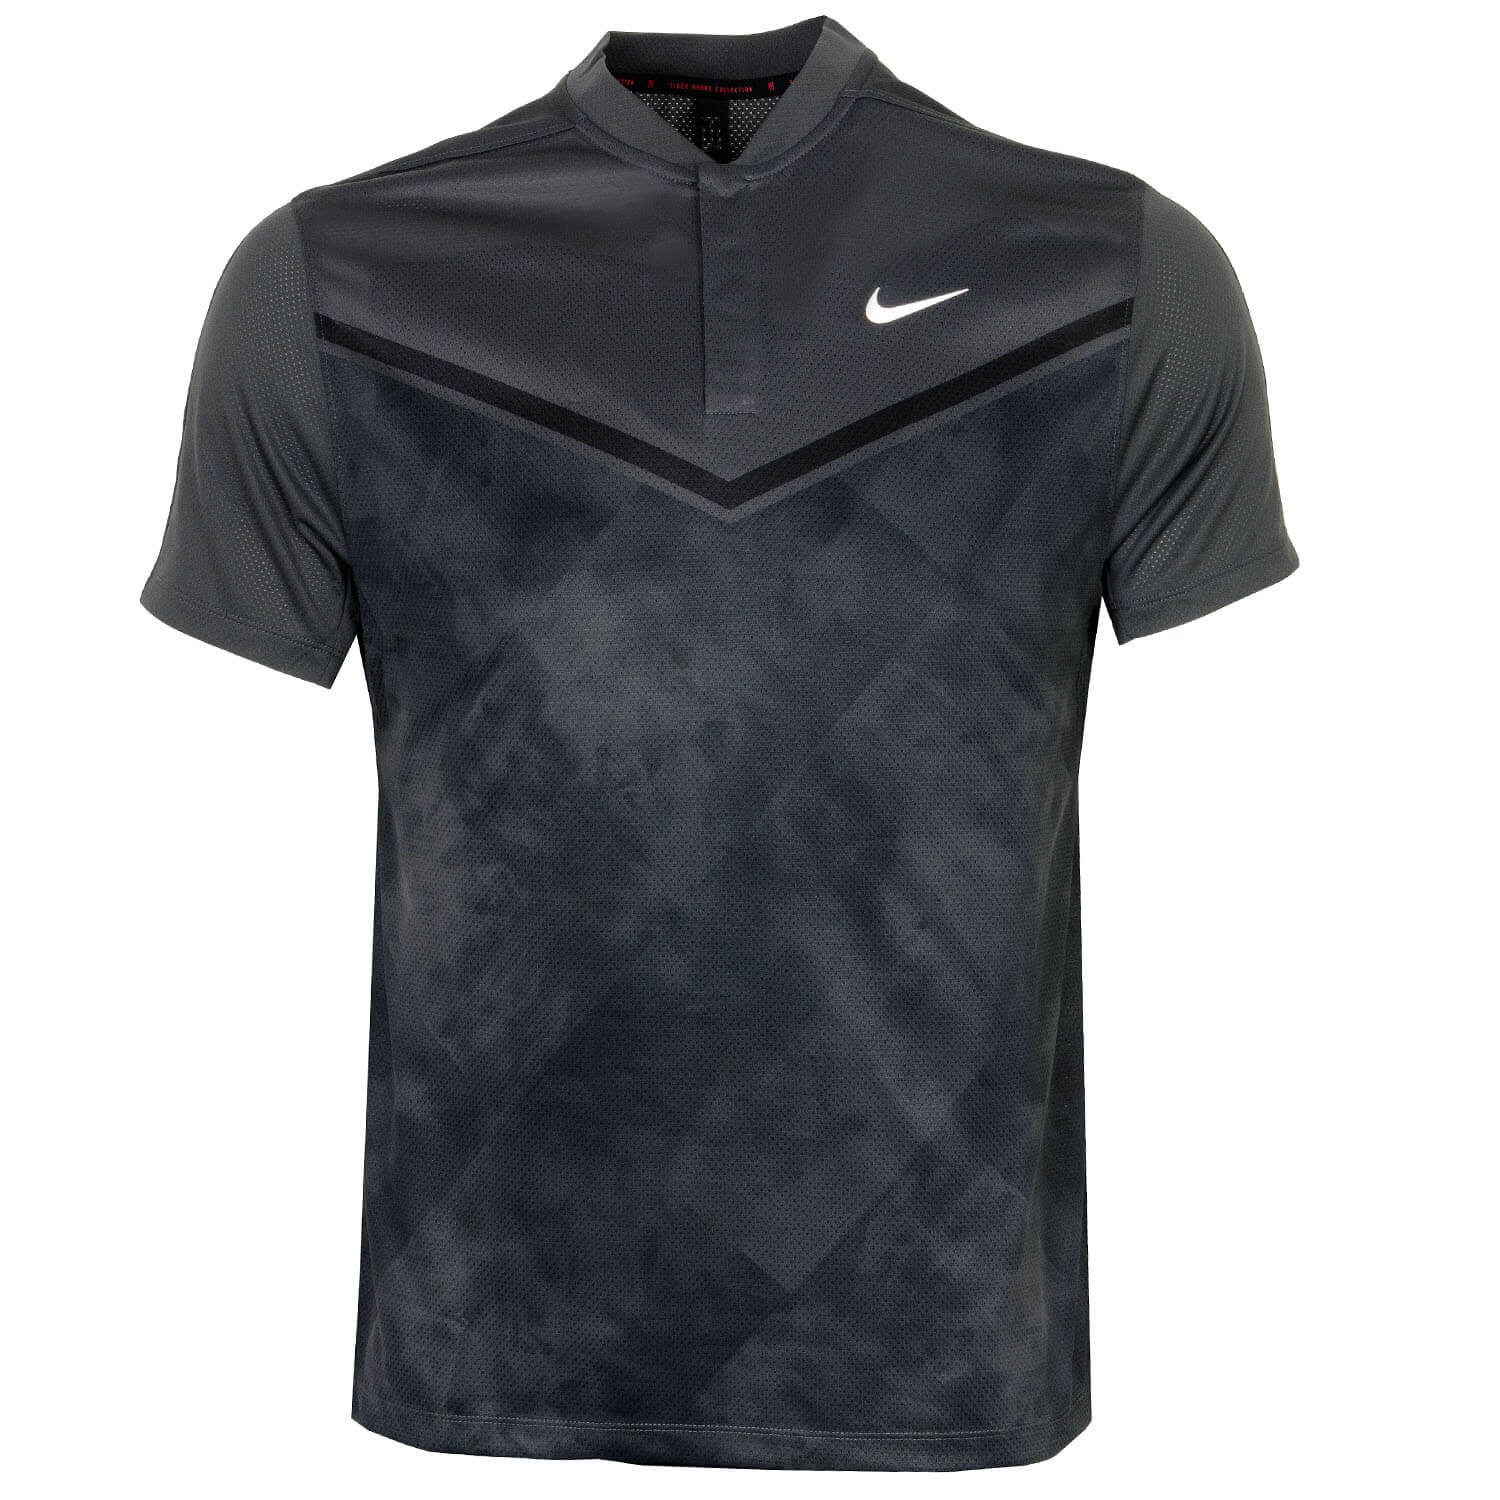 Nike Dri-FIT ADV Tiger Woods Printed Golf Polo Shirt